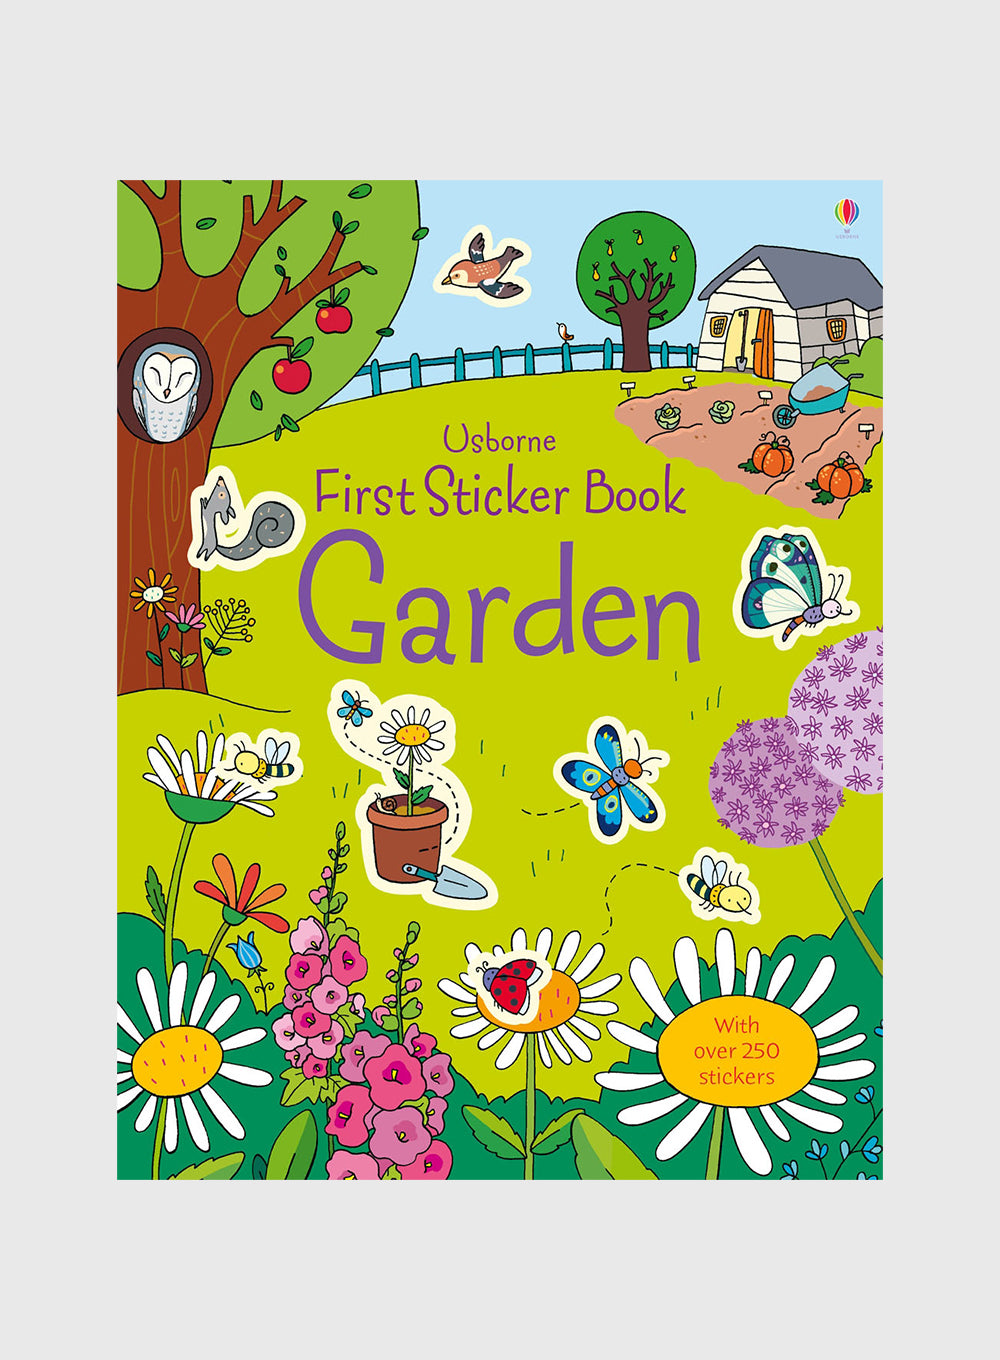 Usborne's First Garden Sticker Book